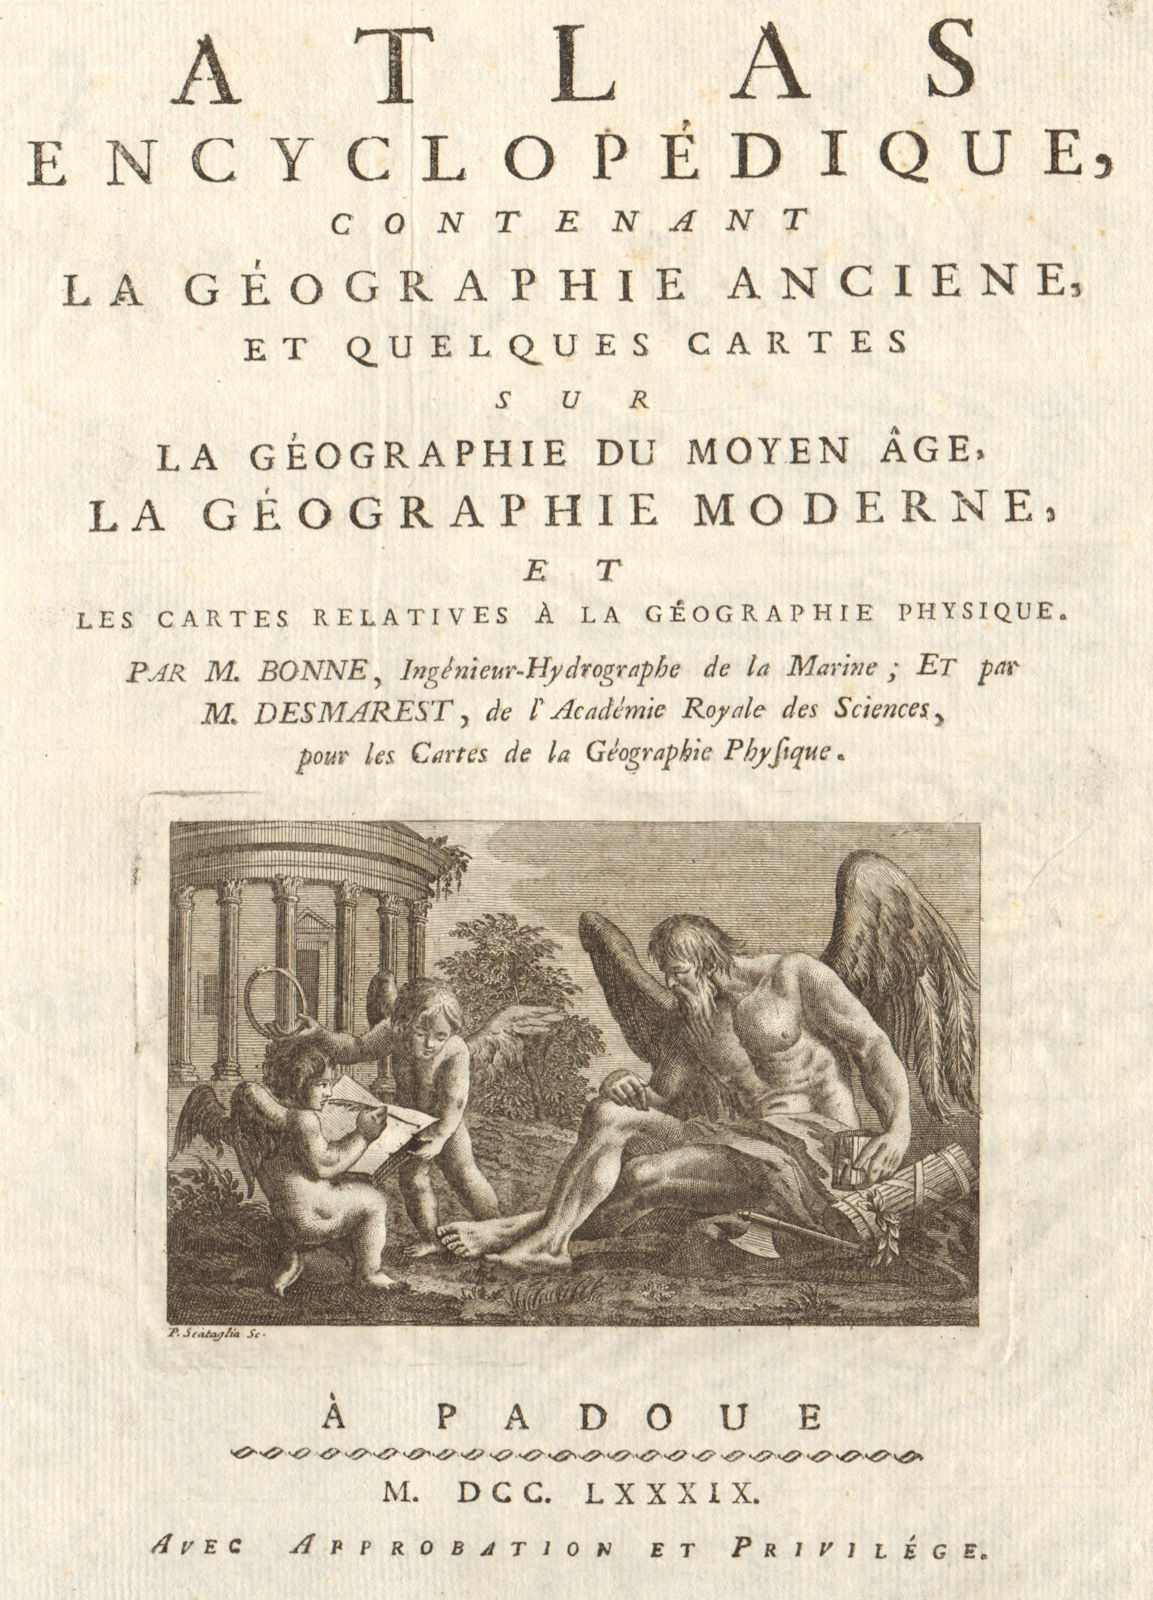 Atlas Encyclopedique title page. 1789-90. BONNE 1789 old antique map chart